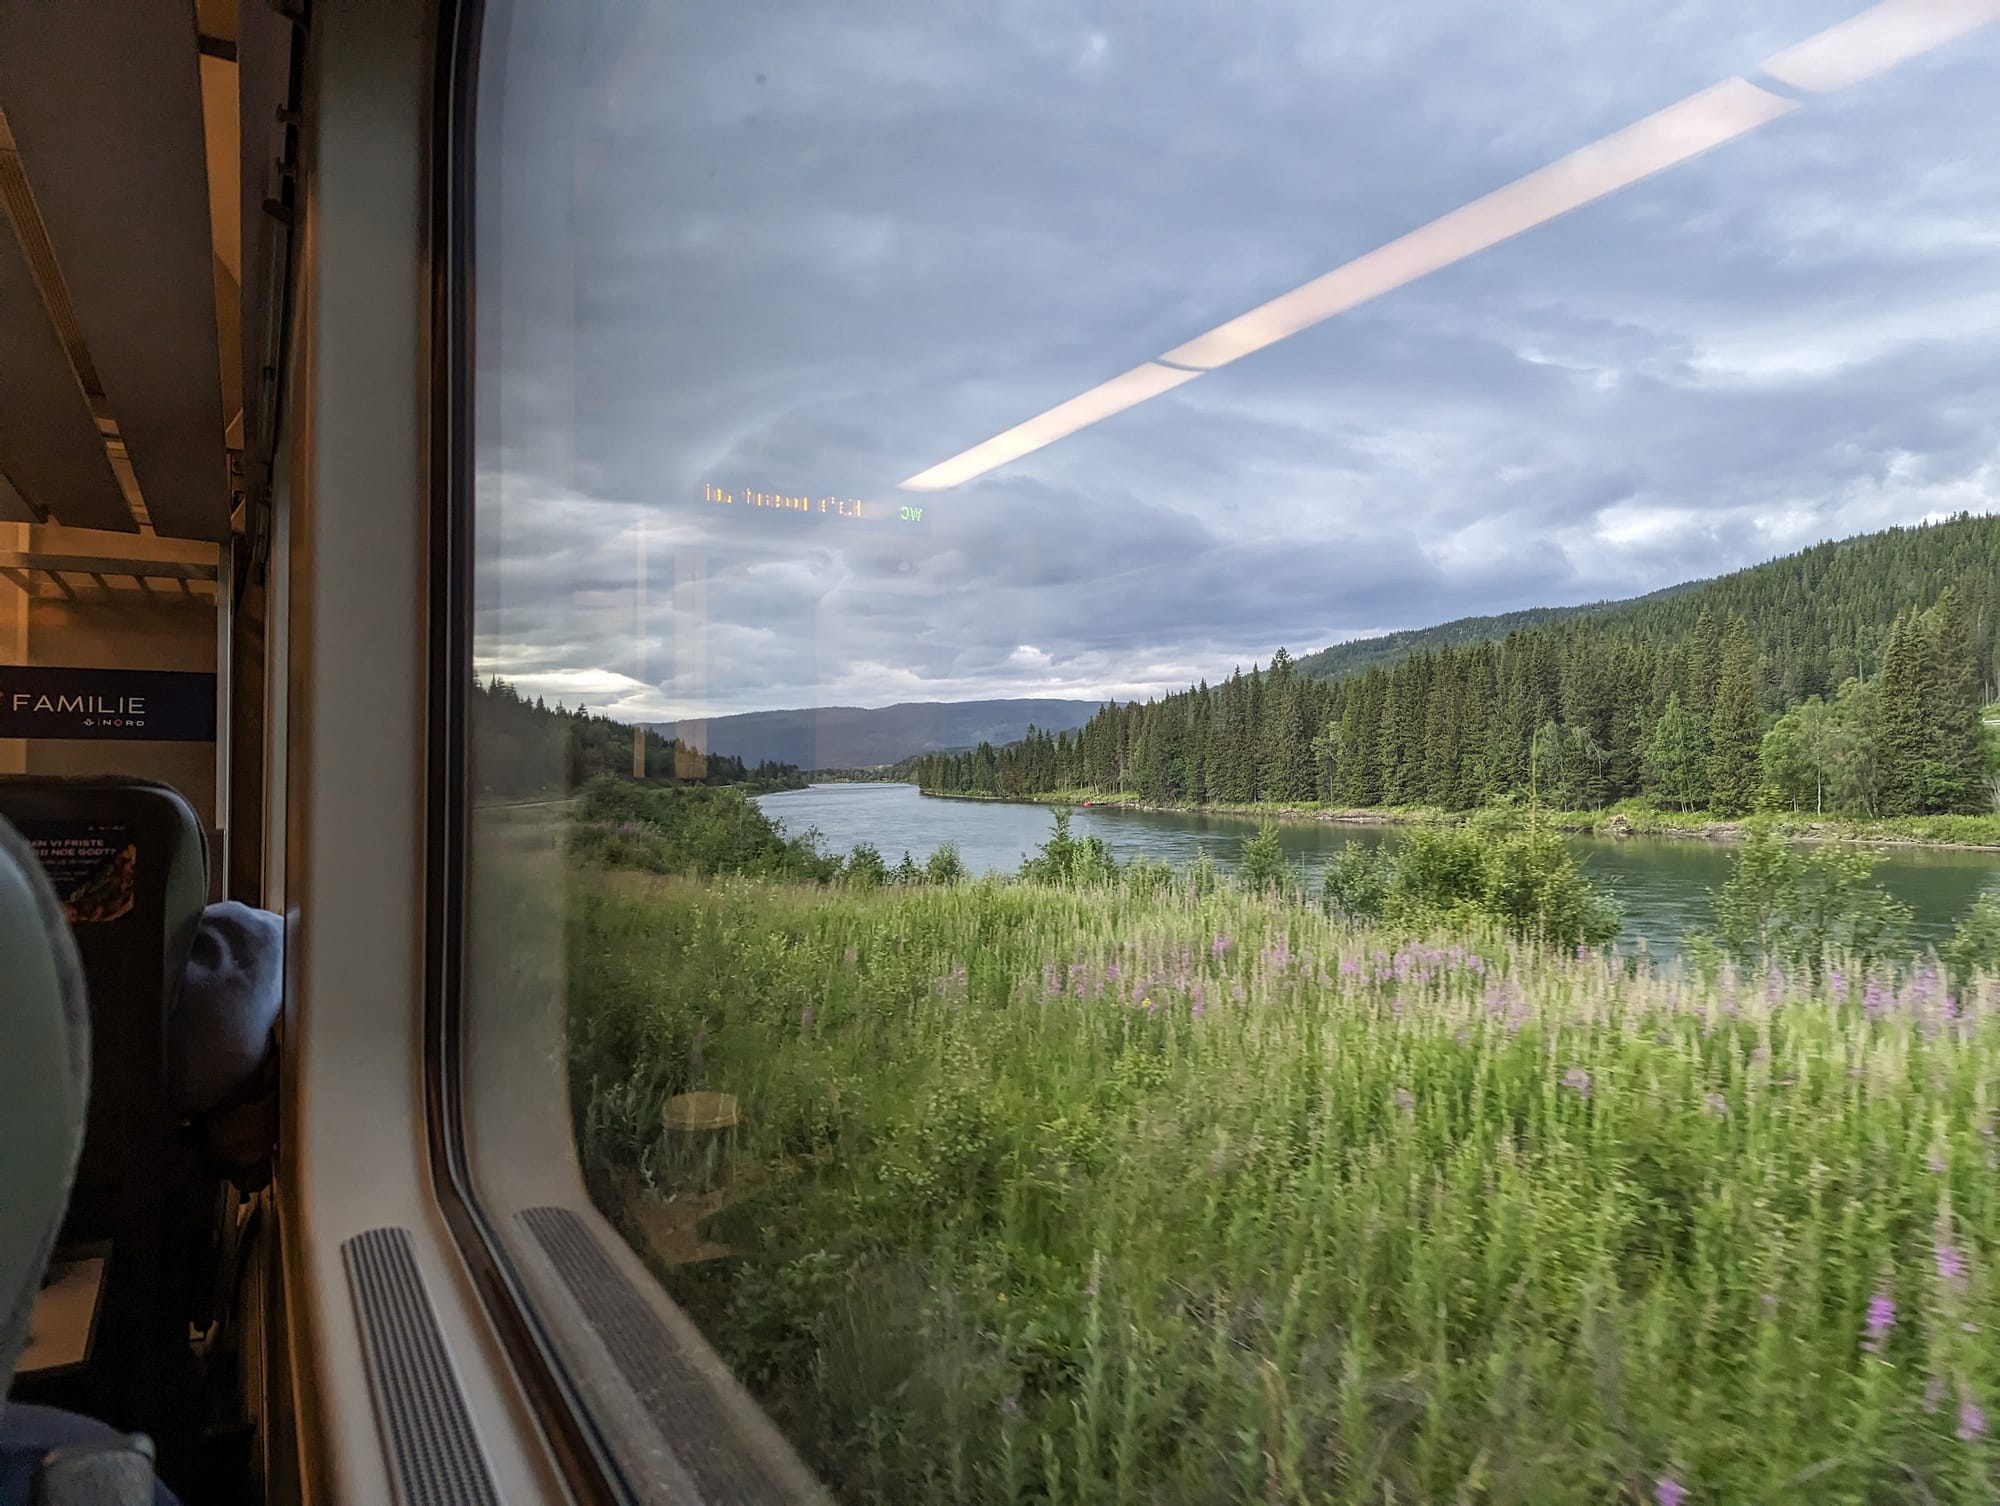 Blick aus dem Fenster auf der Nordlandbahn, eine sommerliche Szenerie an einem Fluss